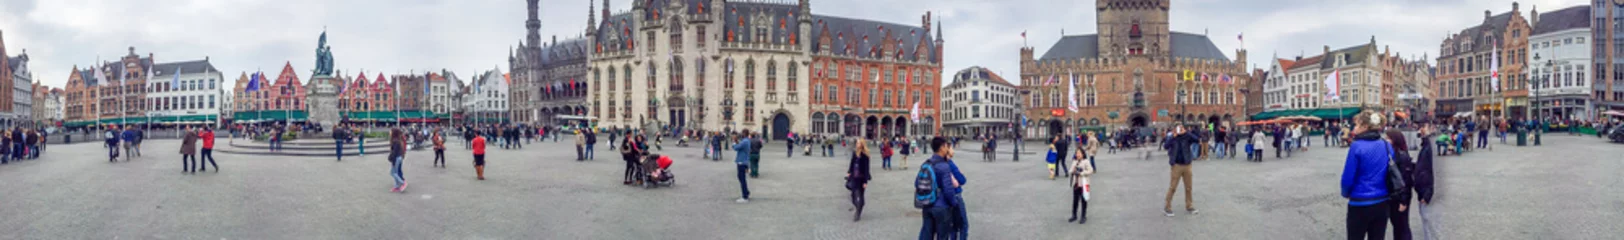 Gordijnen BRUGGE, BELGI - MEI 2015: Toeristen langs stadsstraten. De stad is een beroemde attractie in België © jovannig